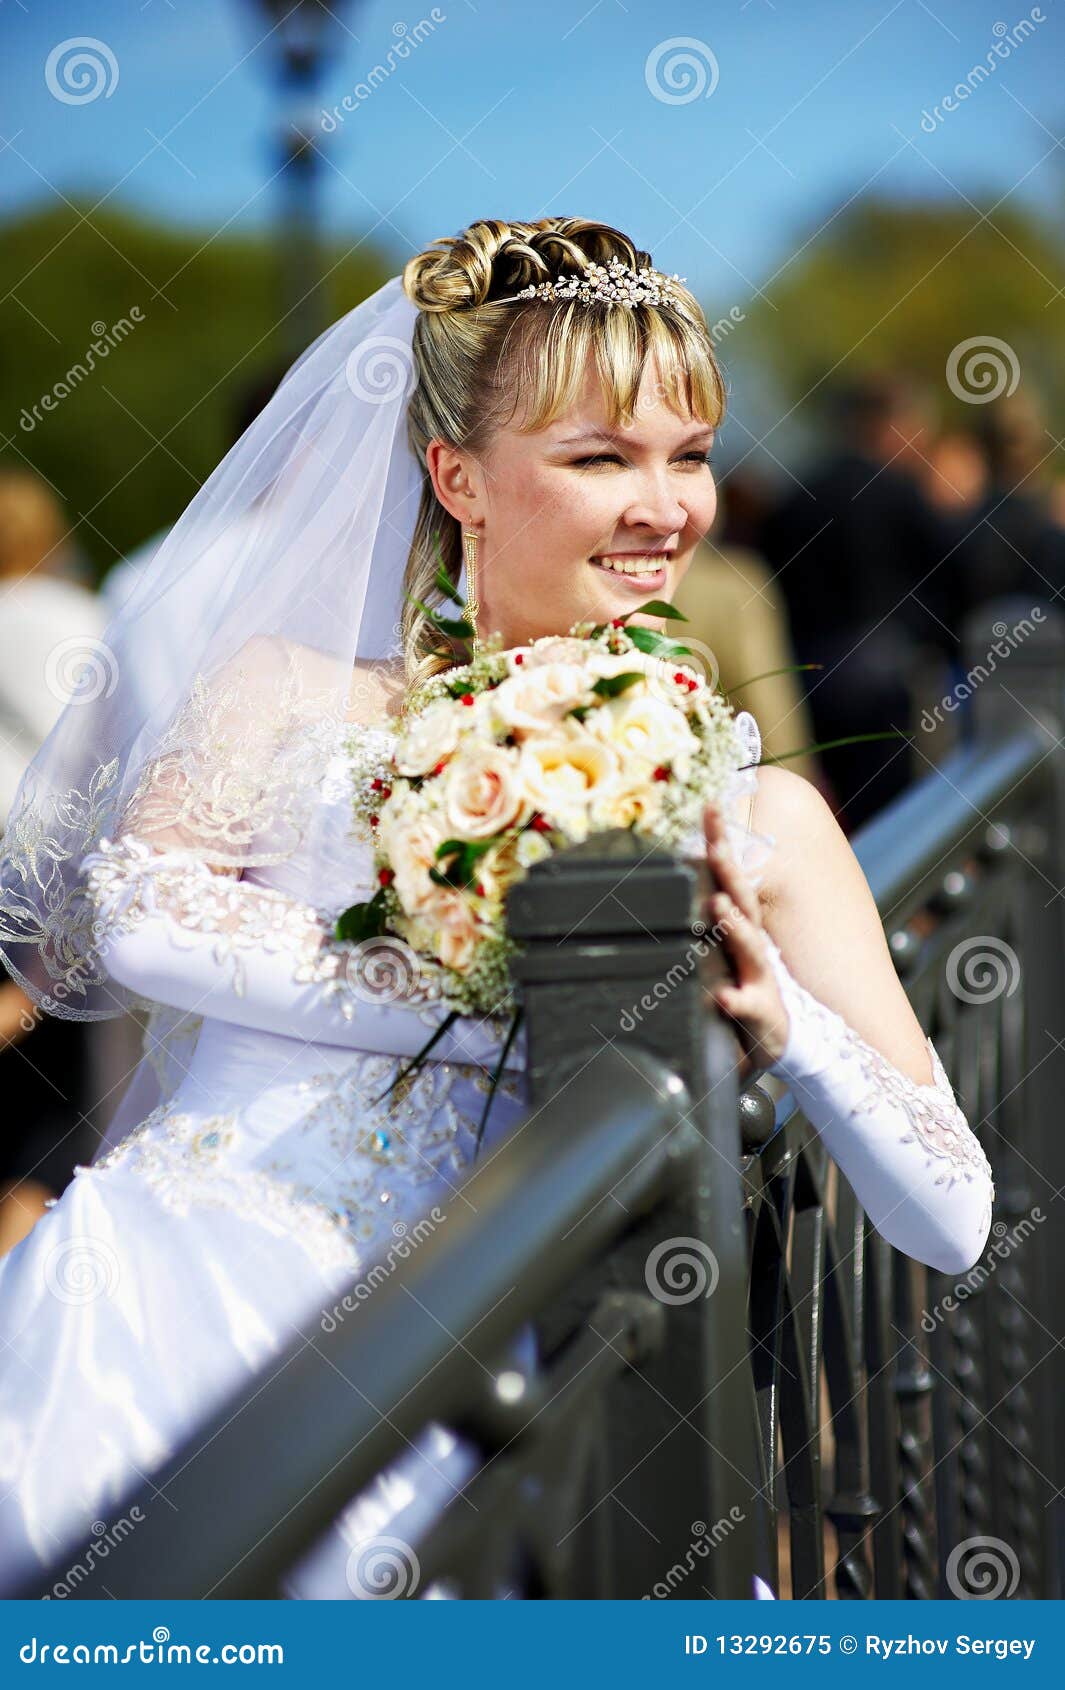 Russian Bride Wedding Video 31